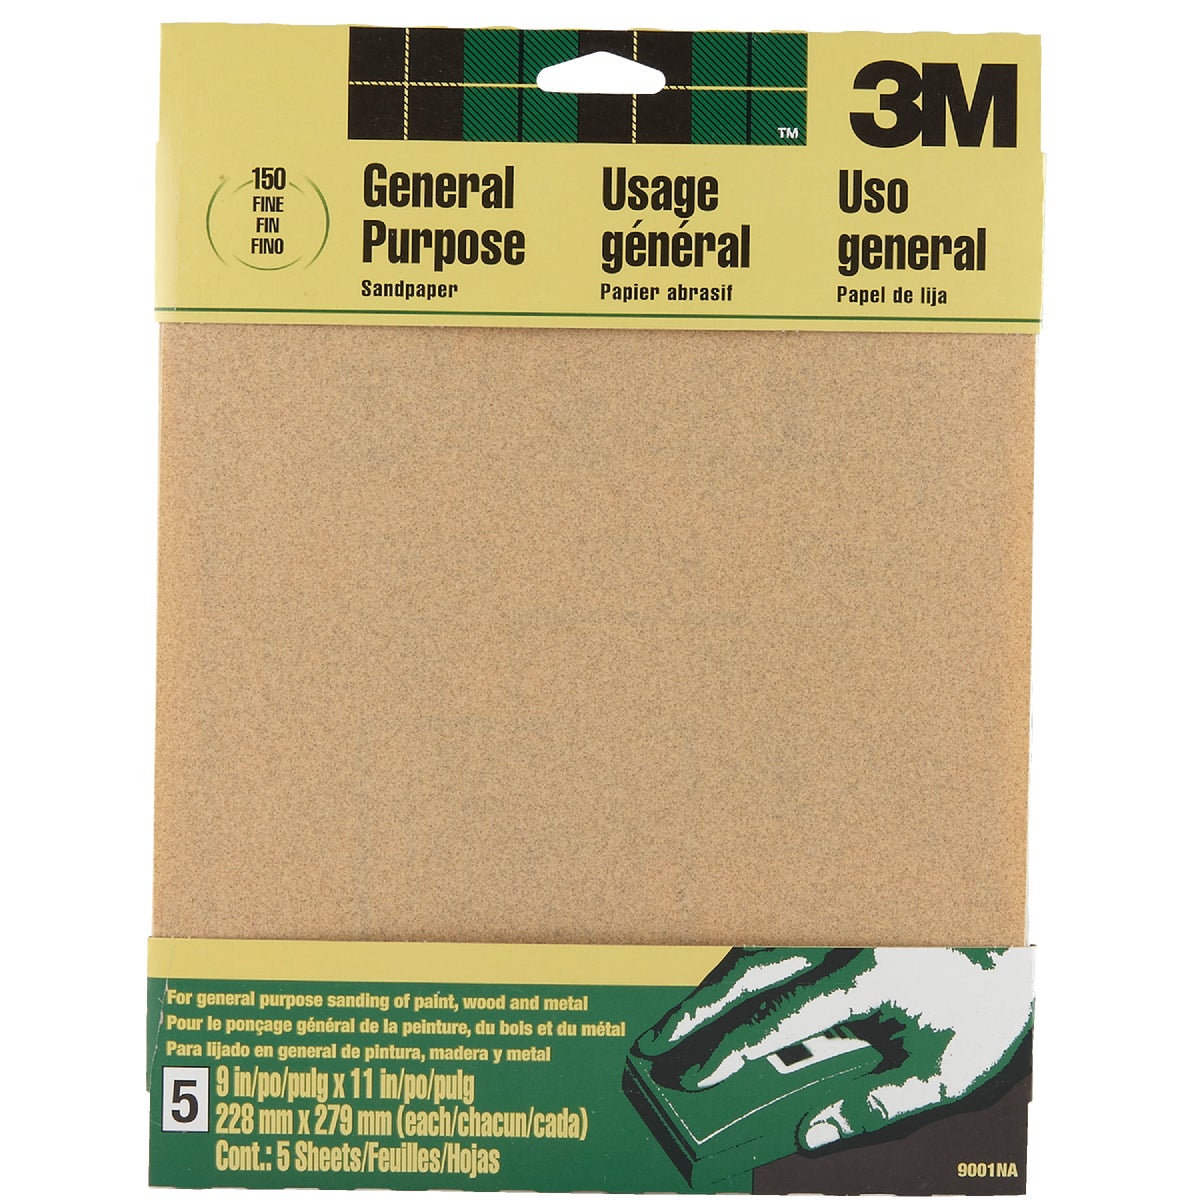 3M General-Purpose 9 In. x 11 In. 150 Grit Fine Sandpaper (5-Pack)